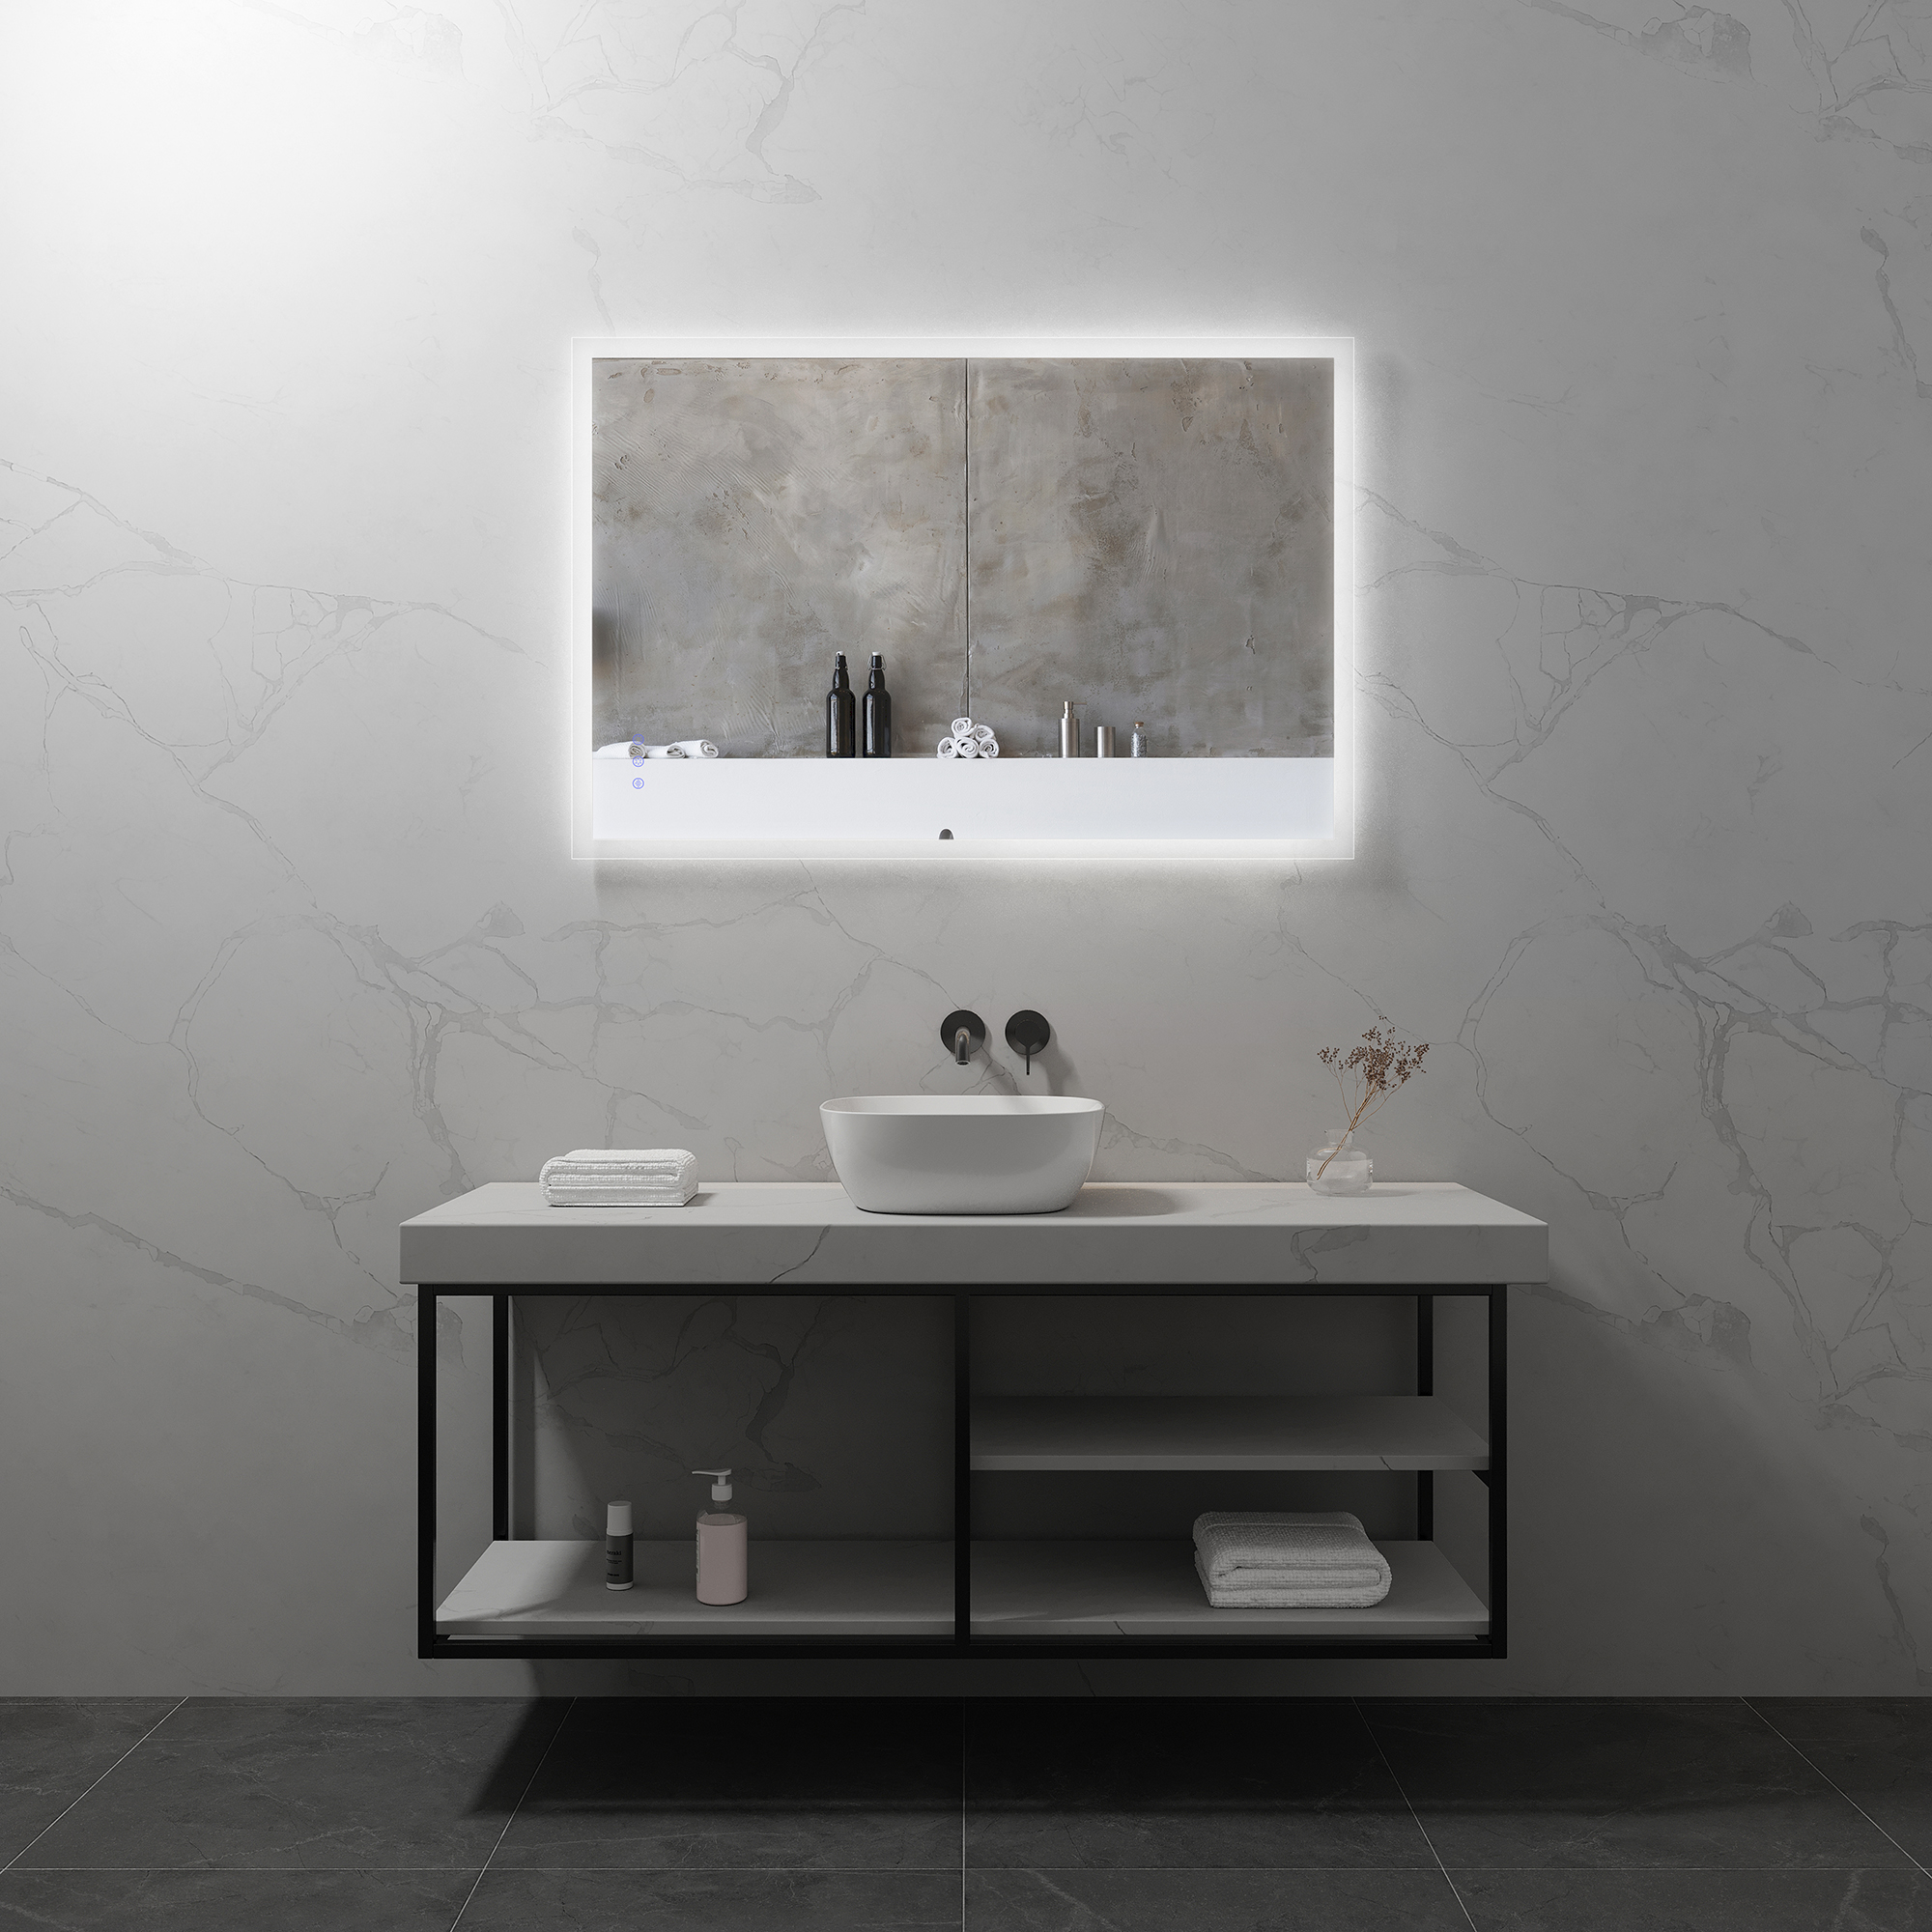 LED Badspiegel Frame Badezimmerspiegel mit dimmbarer Beleuchtung, Farbwechsel und Antibeschlag-Funktion IP44